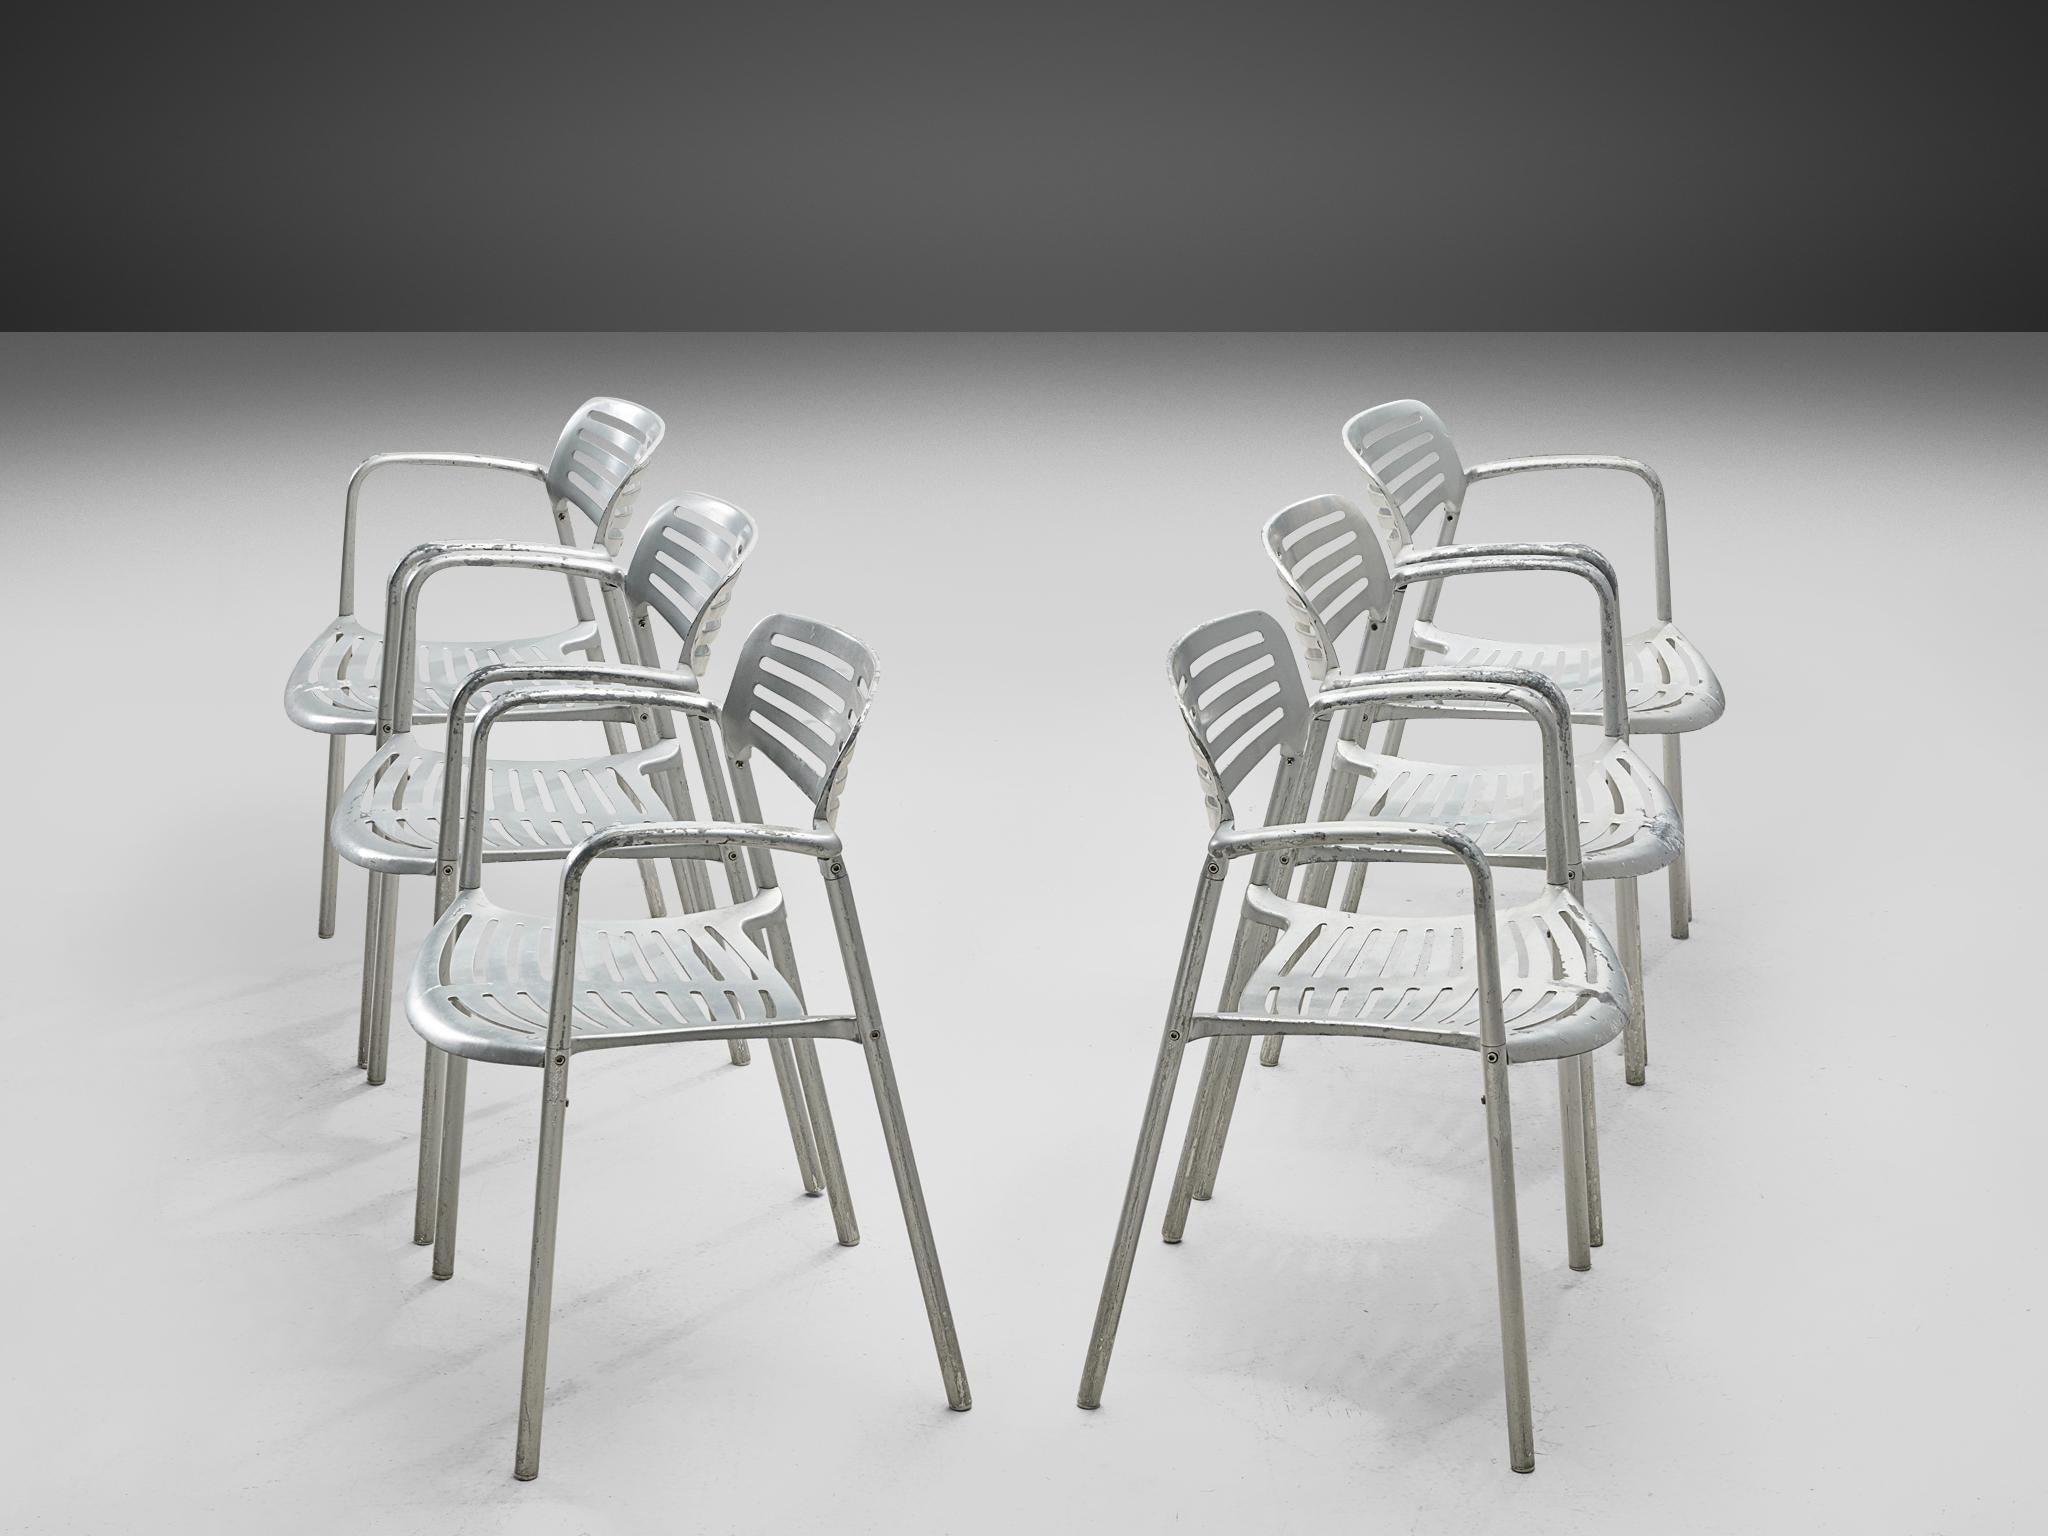 Jorge Pensi, Sessel, Aluminium, Spanien, 1988

Ein Satz Aluminiumstühle von Jorge Spensi aus der Collection'S Toledo. Pensi entwarf die Stühle 